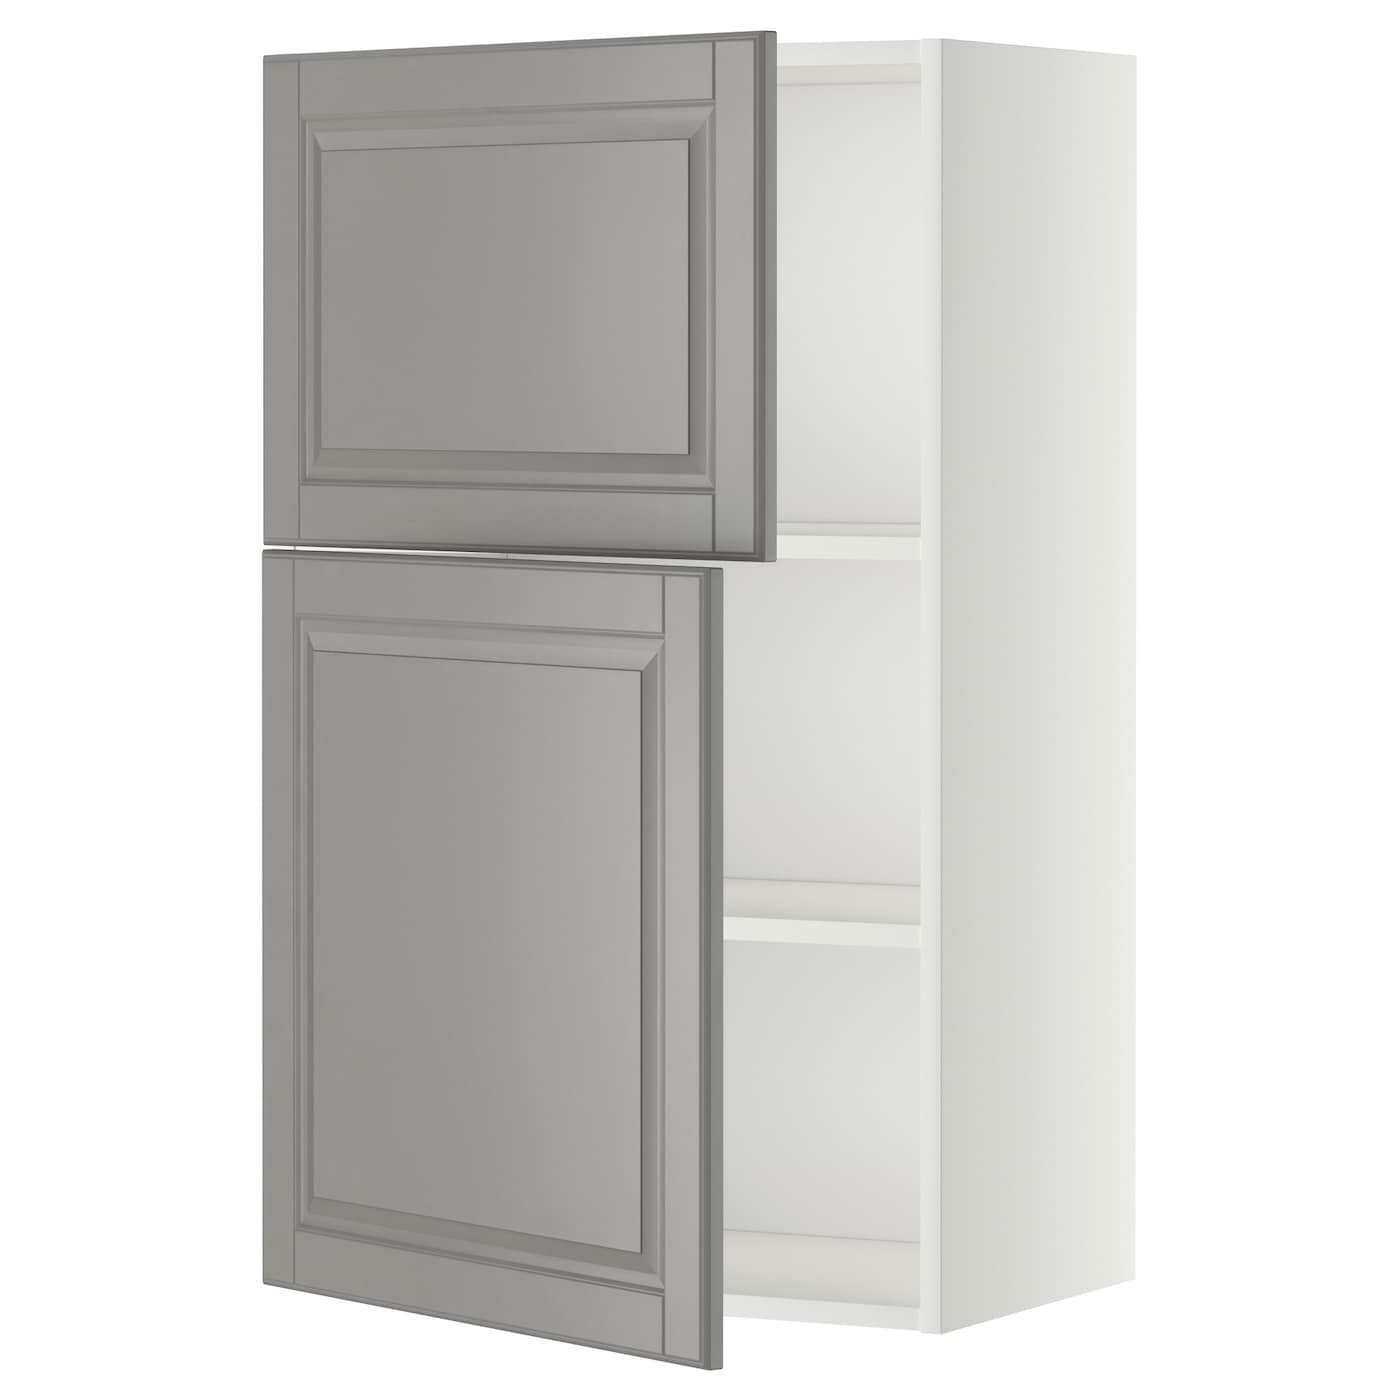 Навесной шкаф с полкой - METOD IKEA/ МЕТОД ИКЕА, 100х60 см,  белый/серый